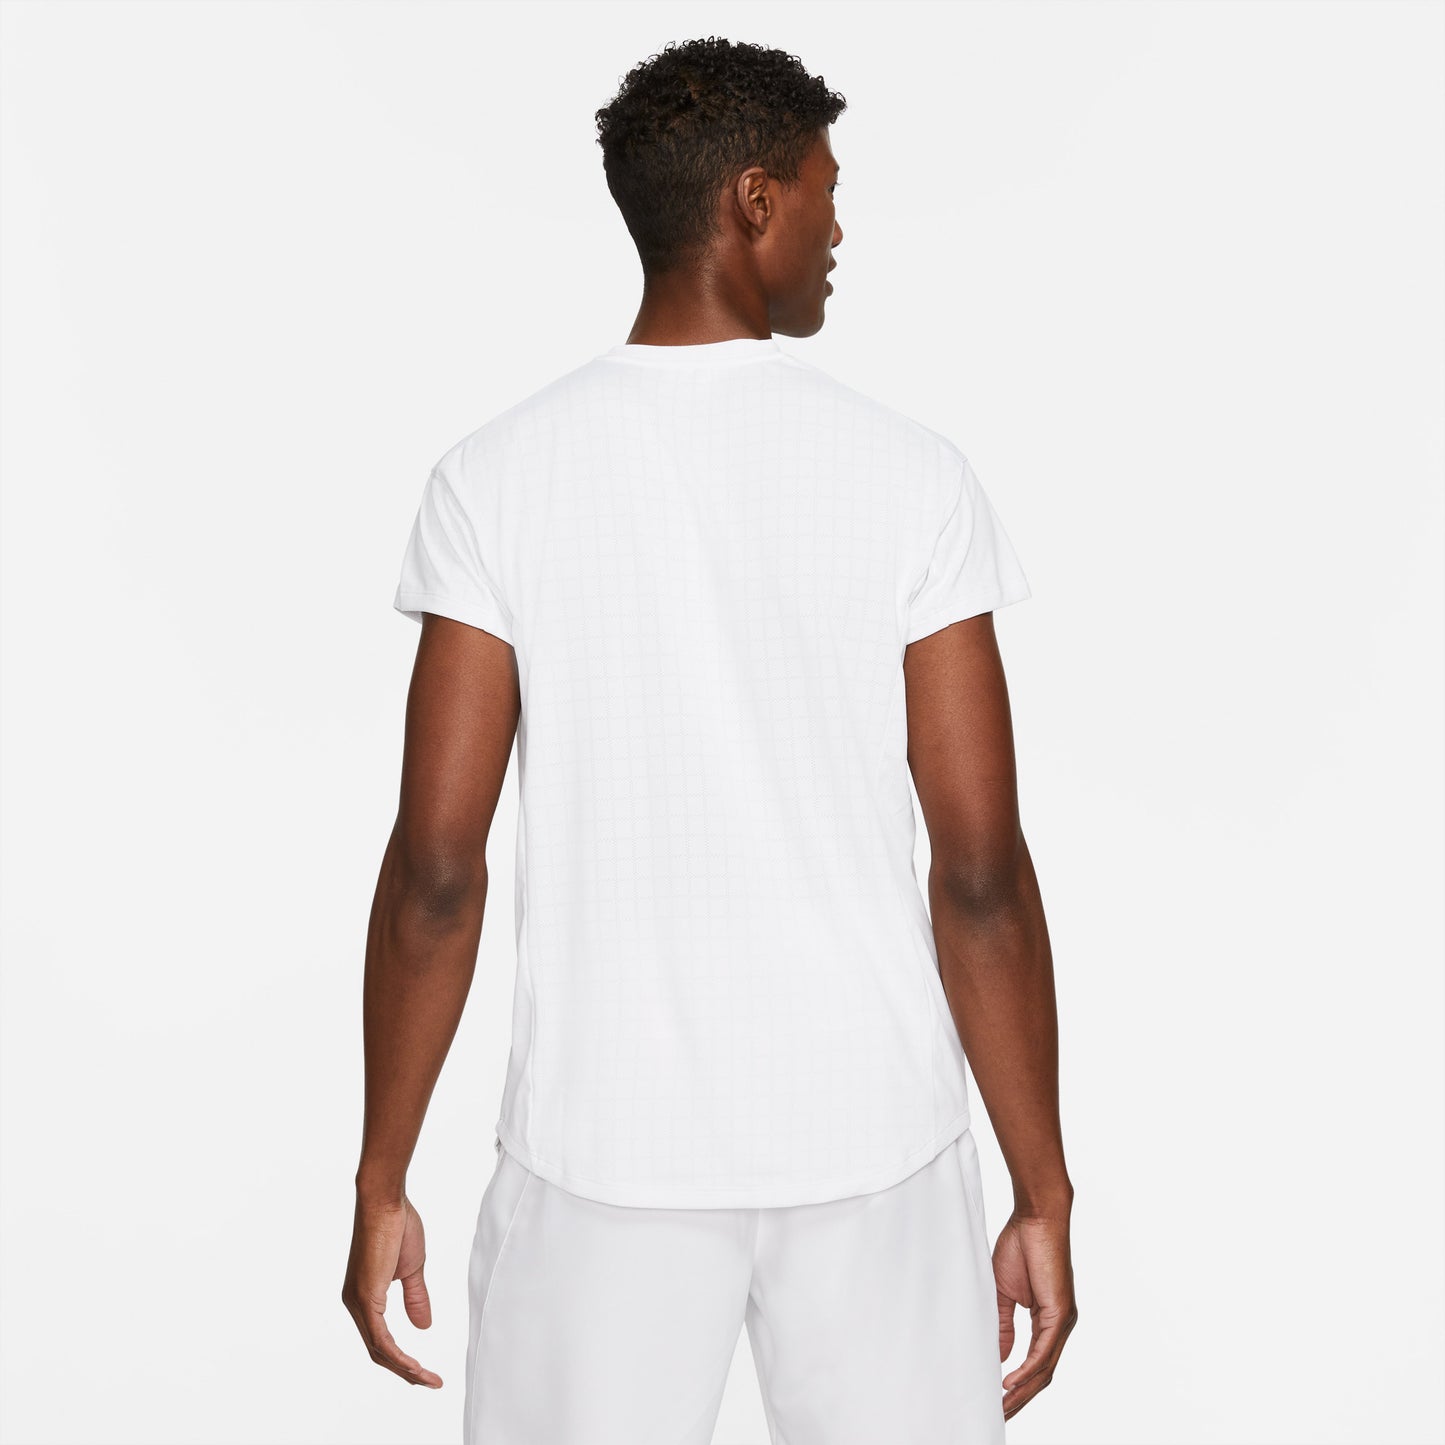 Nike Breathe Slam Men's Tennis Shirt White (2)